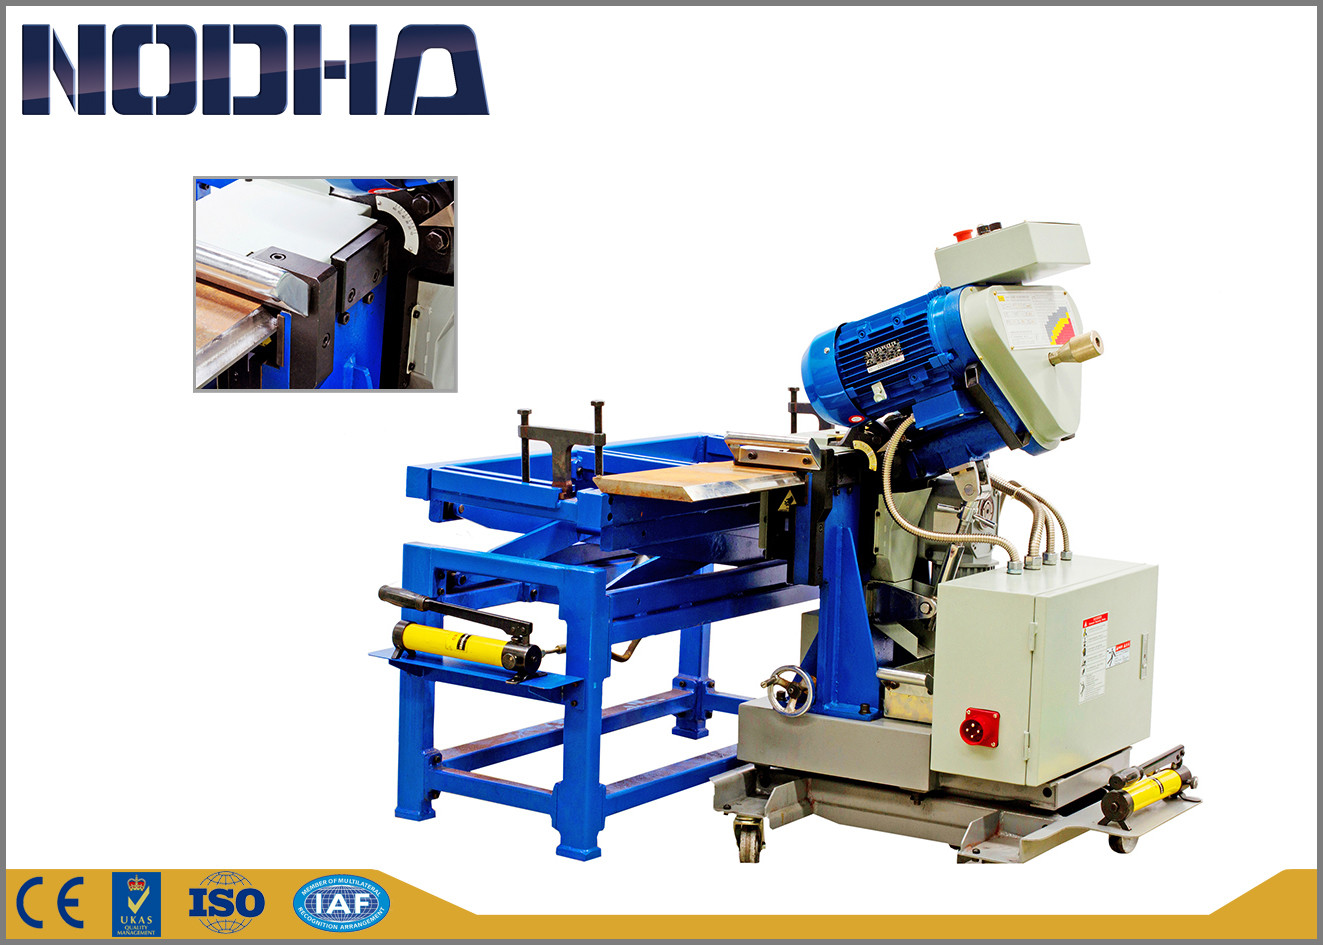 NODHA Portable Edge Milling Machine, Mesin Penggilingan Otomatis 750-1050 R / Min Motor Speed